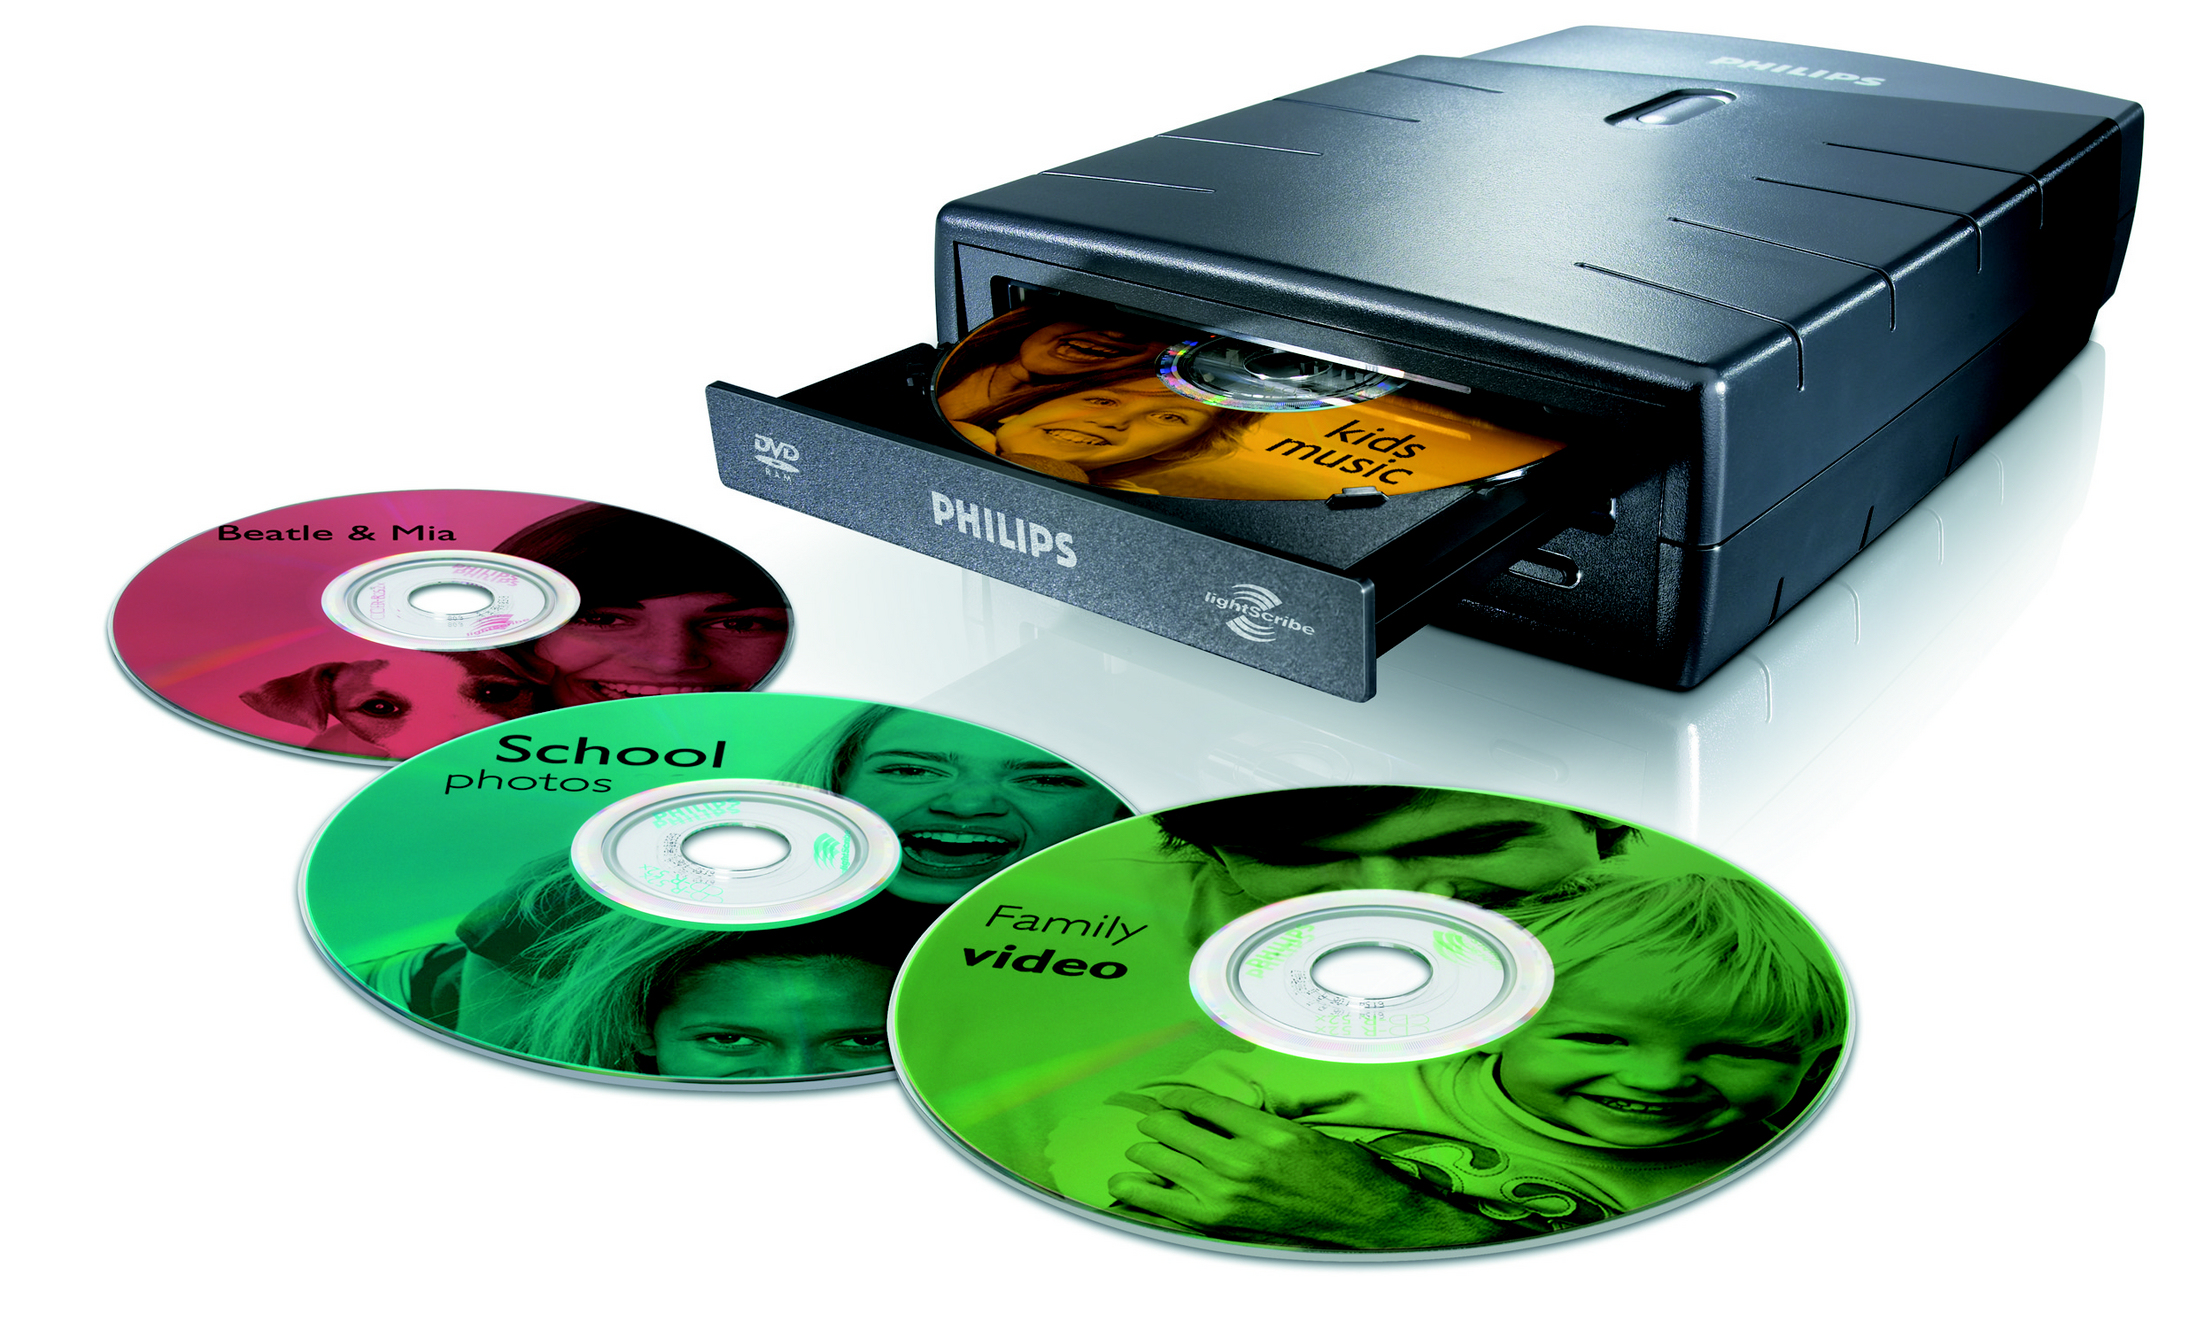 Жесткий диск flash память компакт диск процессор. Двд диск память. DVD-диски (DVD – Digital versatile Disk, цифровой универсальный диск),. DVD-R, DVD-RW диски. Внешняя память дисковые носители оптические.